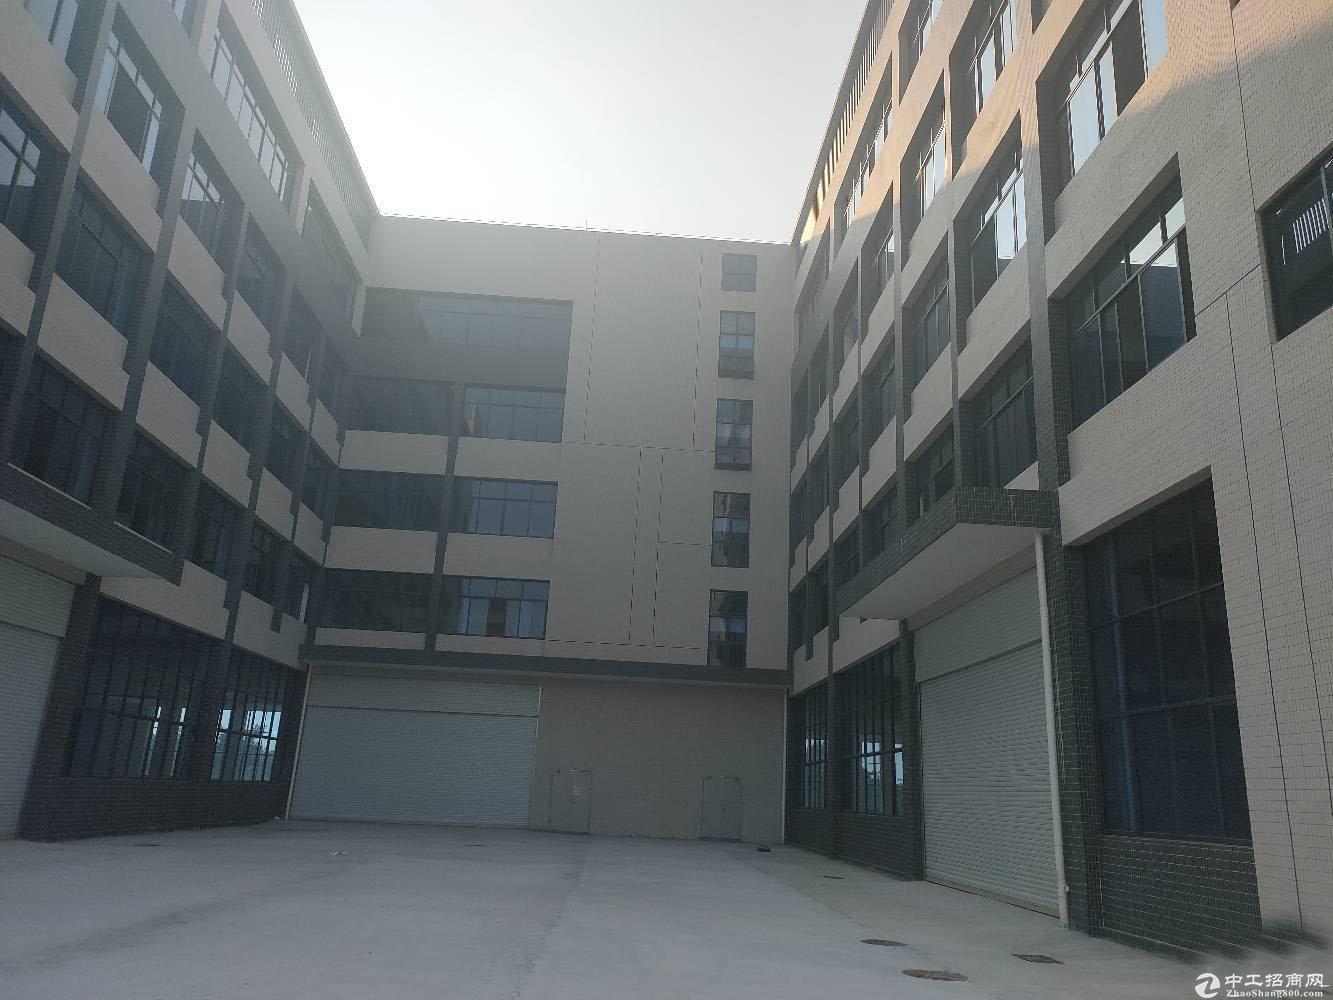 白云 太和民营科技园厂房3楼1260平方出租 有办公室装修